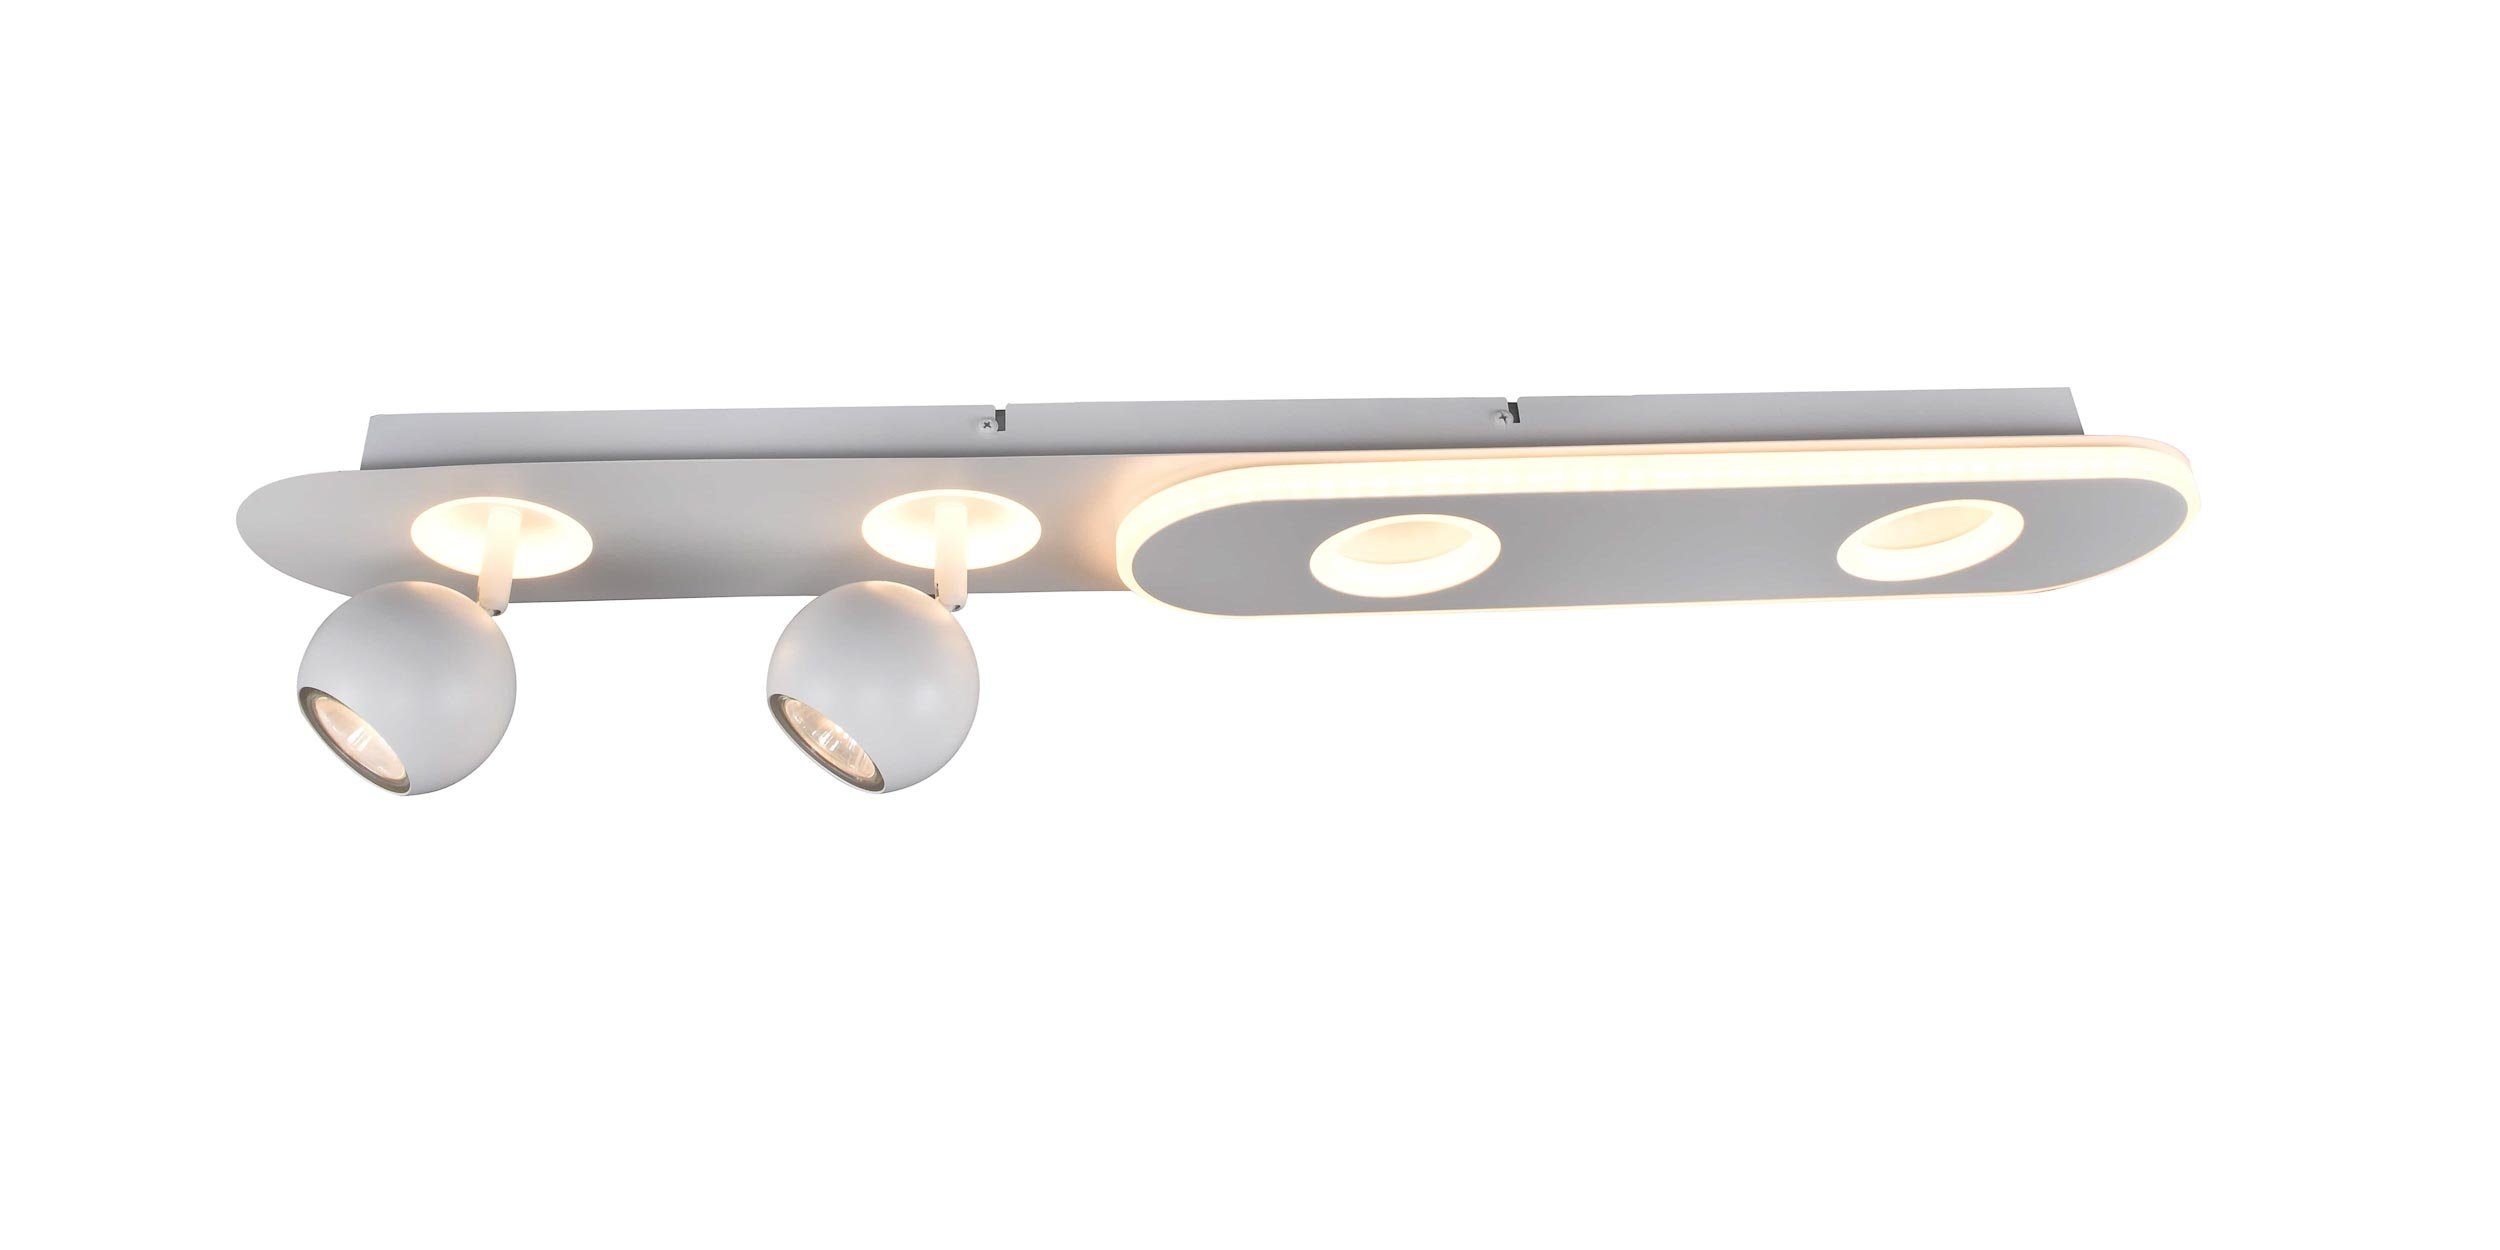 Spotbalken 5W PAR51, Lampe, GU10, Irelia, 4flg geeignet LED Deckenleuchte weiß, Irelia 2x Brilliant fü